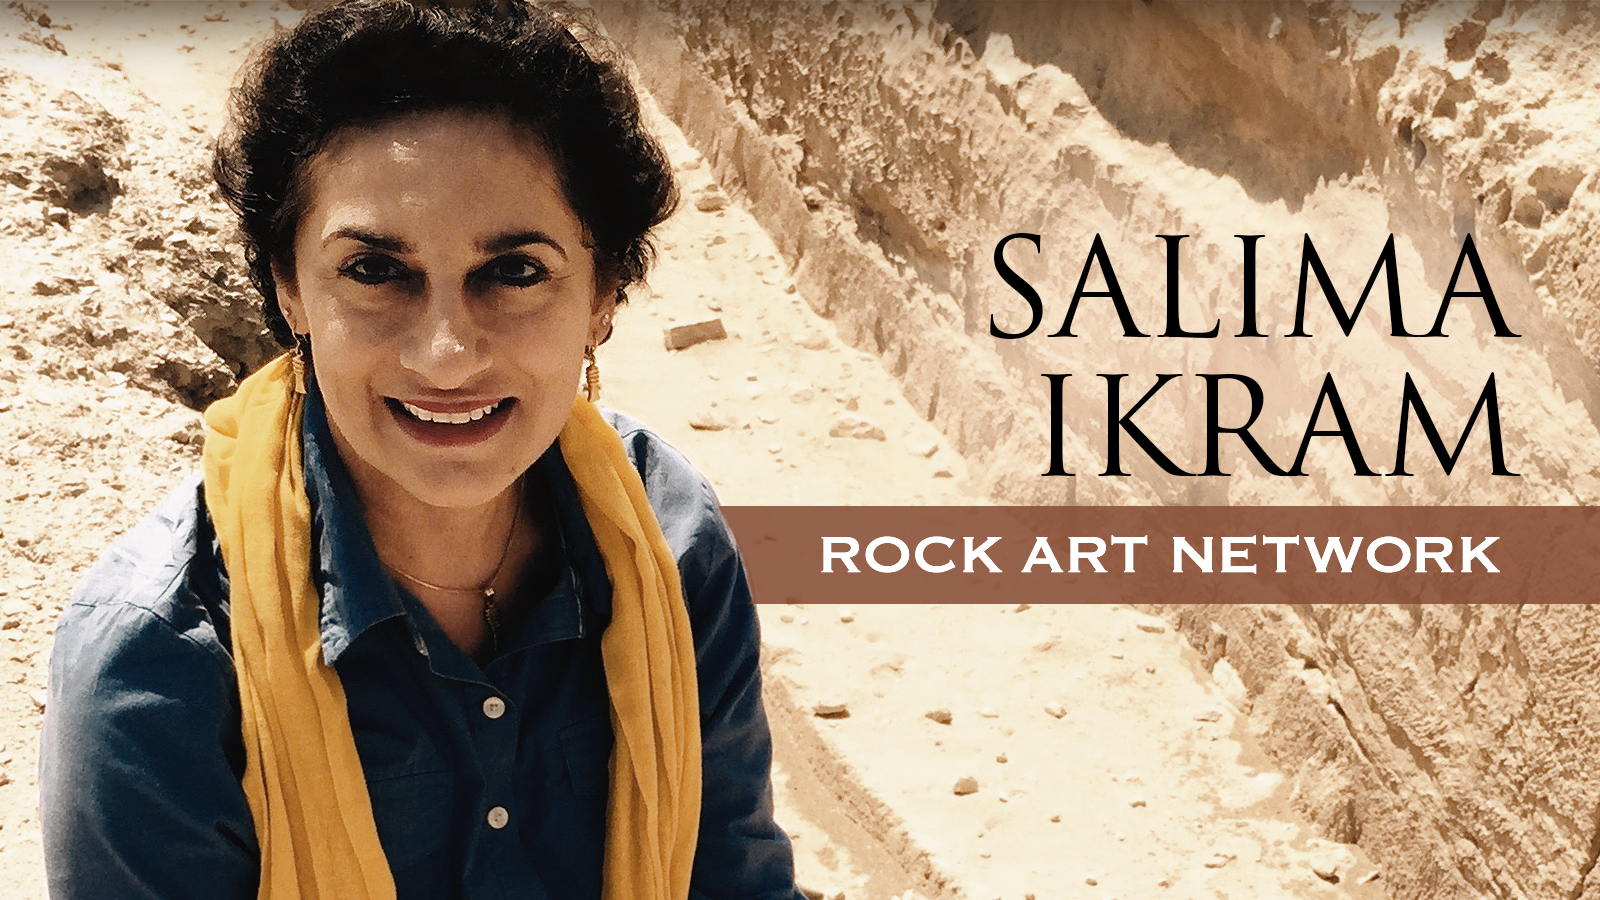 Rock Art Network Salima Ikram